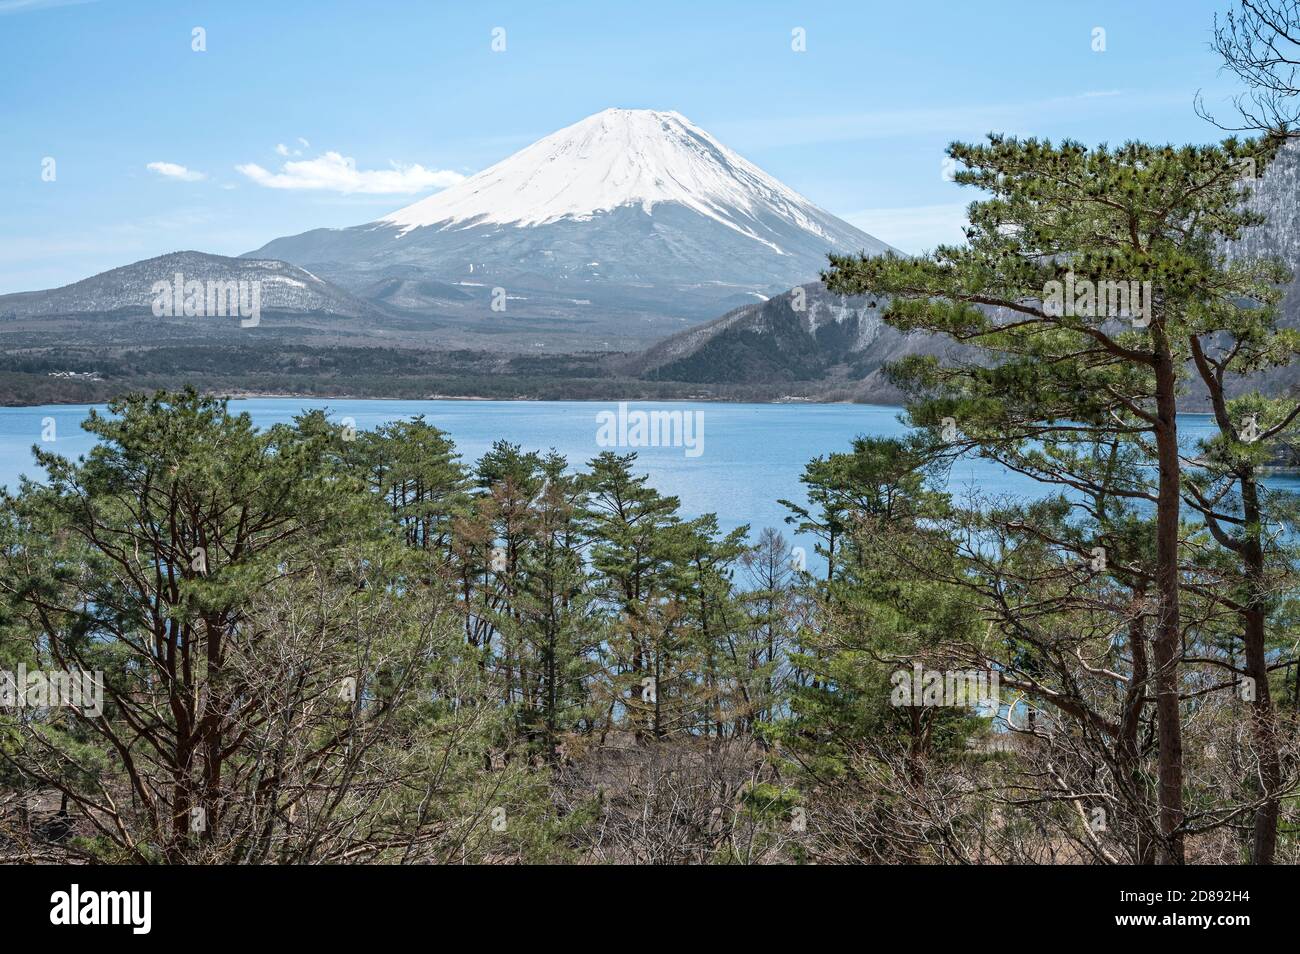 Mount Fuji through the trees around lake Motosuko. Stock Photo